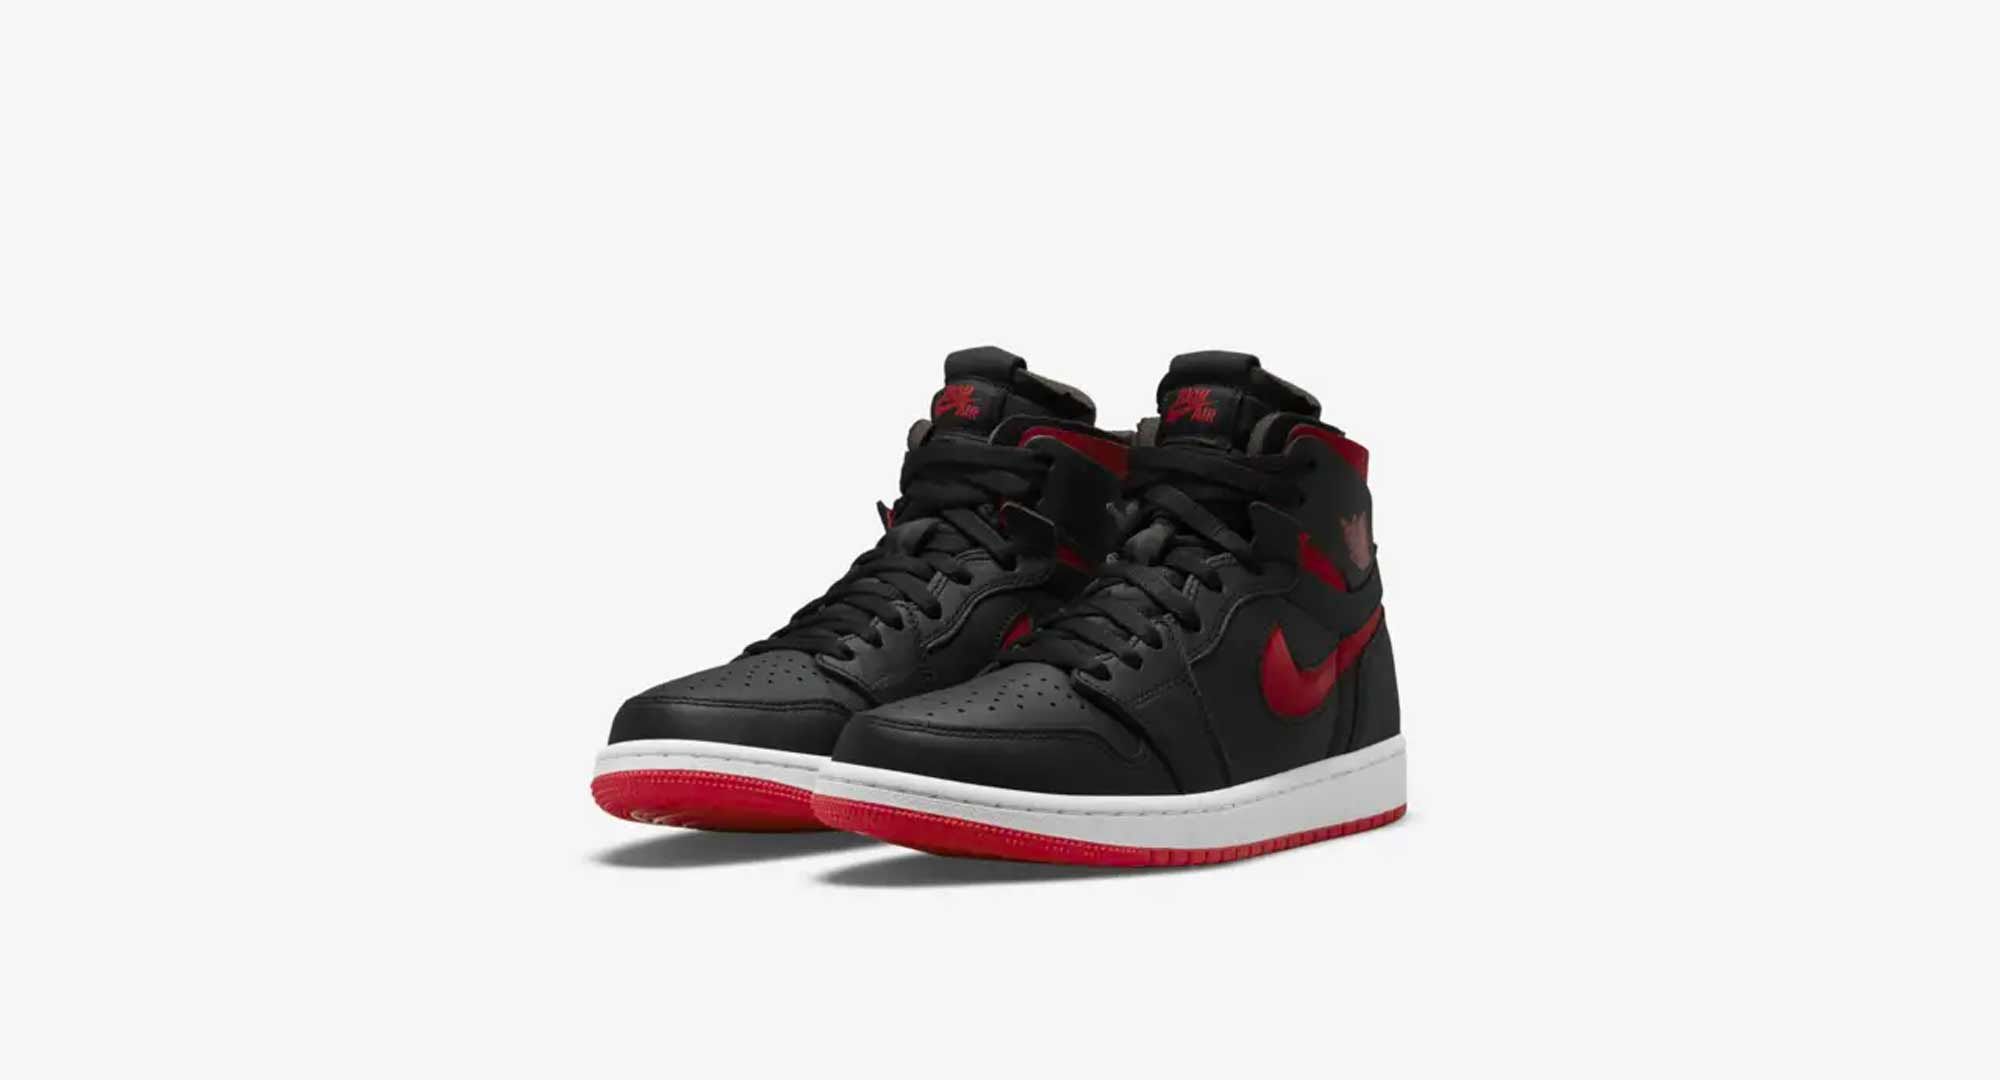 Maldito A tientas diversión Nike lanza estas zapatillas Air Jordan 1 en rojo y negro